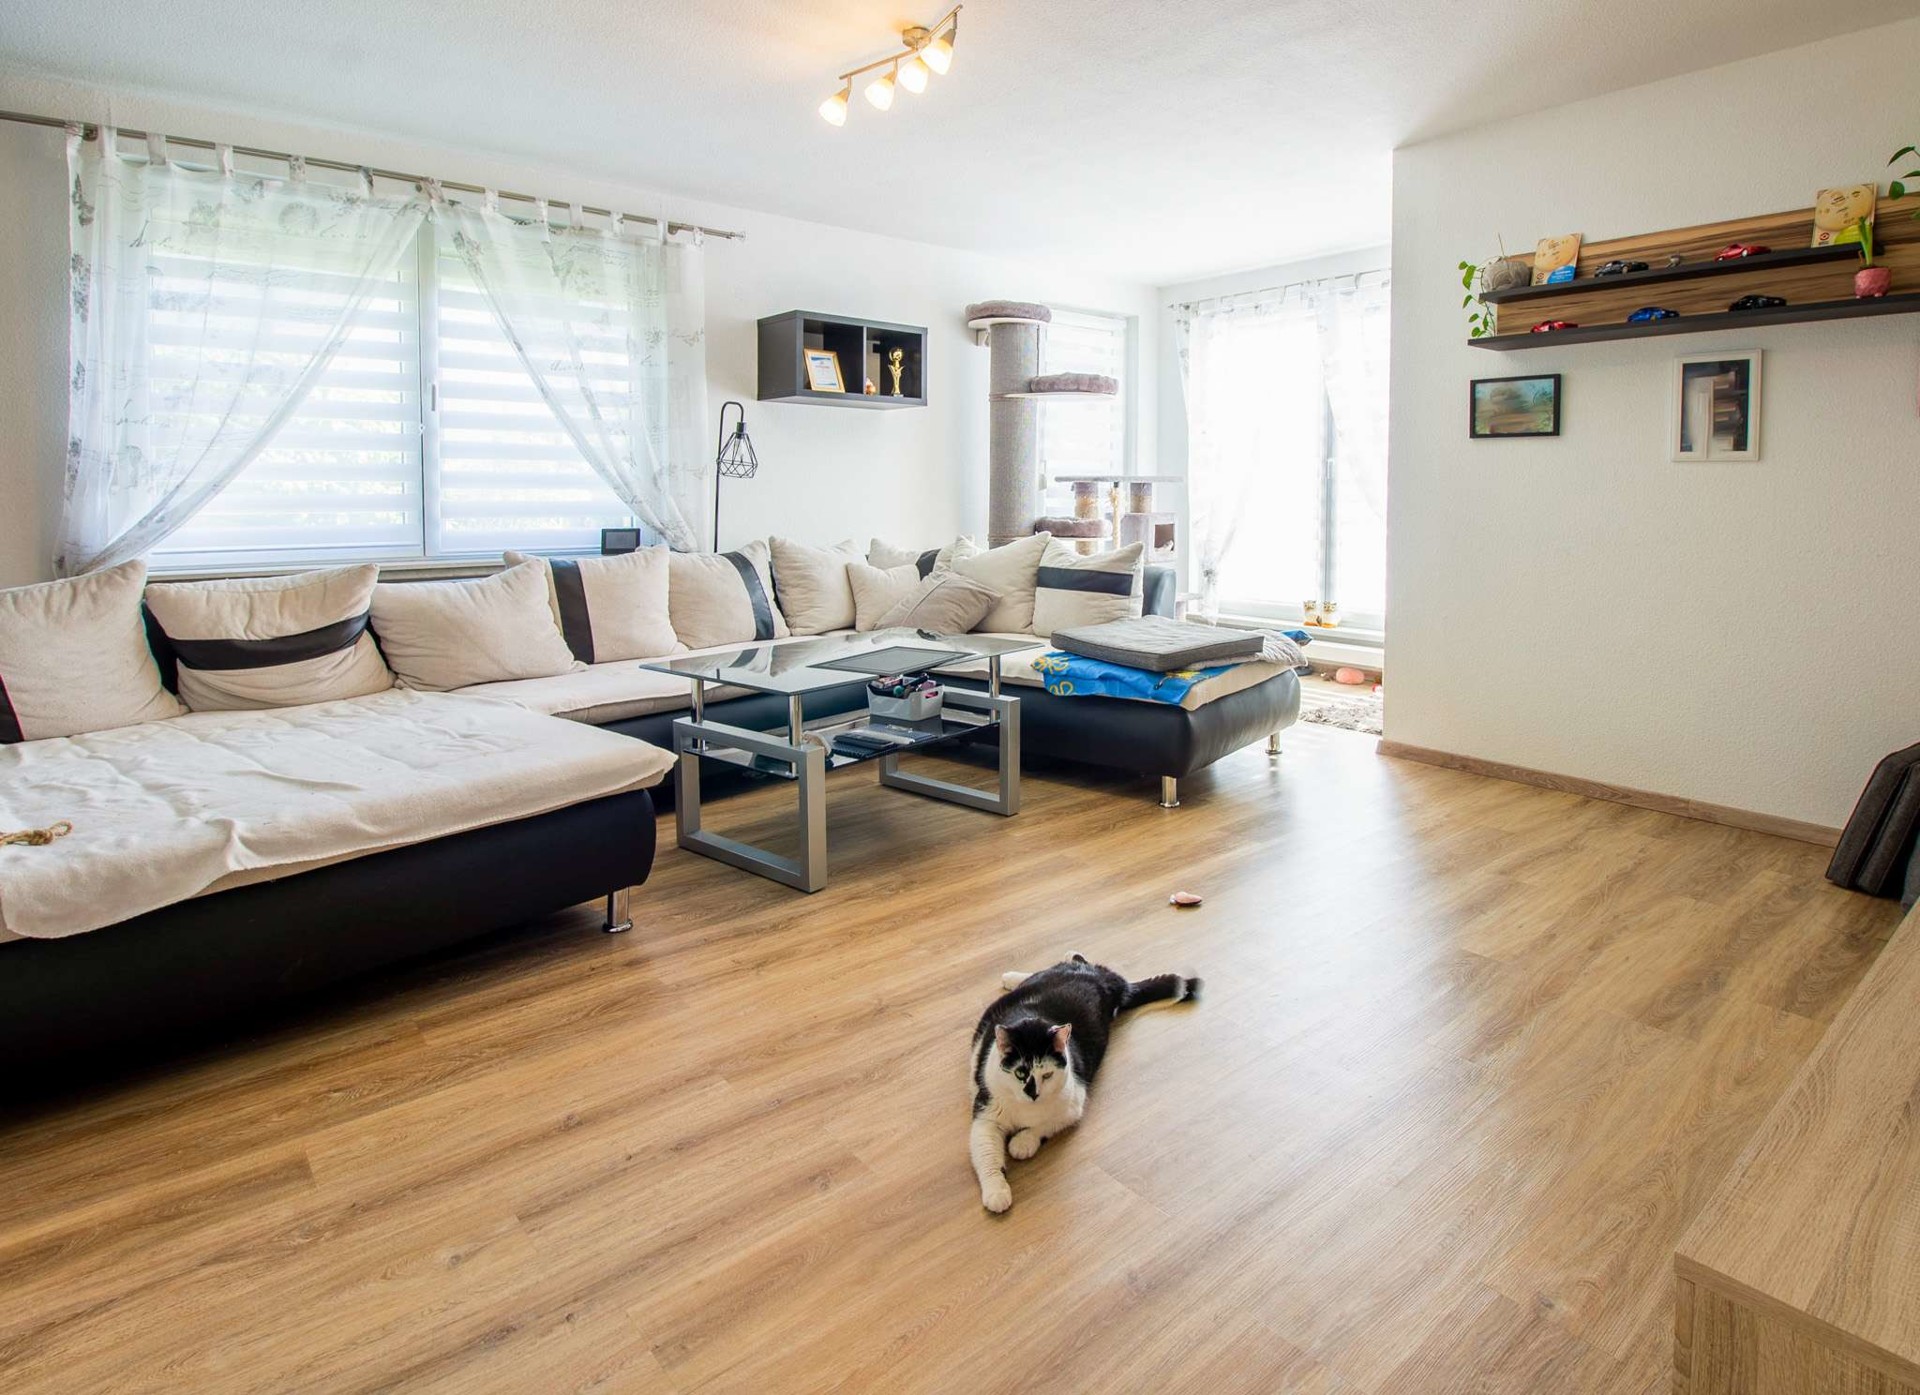 Gepflegte 2-Zimmer-Wohnung mit Terrasse – Ihr stilvolles Zuhause in grüner Umgebung! - Wohnzimmer